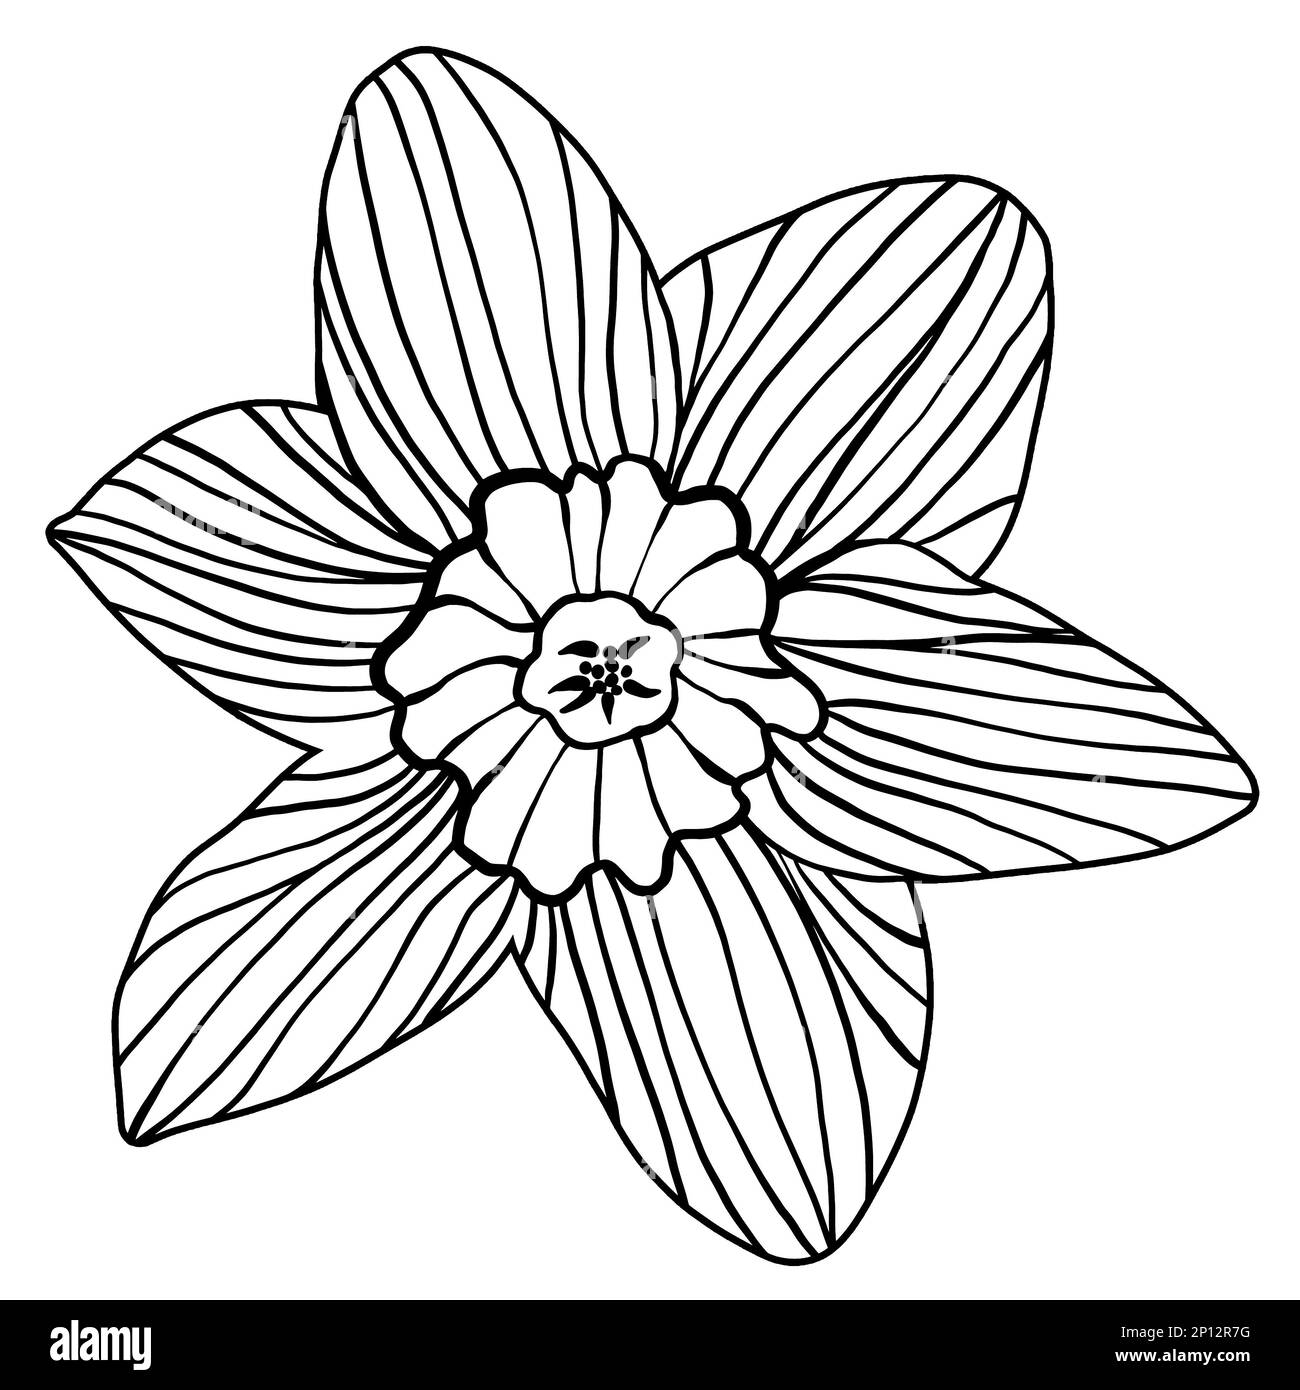 Un seul narcisse jonquille de fleur silhouette contour Doodle dessin isolé sur fond blanc. Boiseries noires, motifs de linocut, imprimés en blocs de bois ou style rétro Banque D'Images